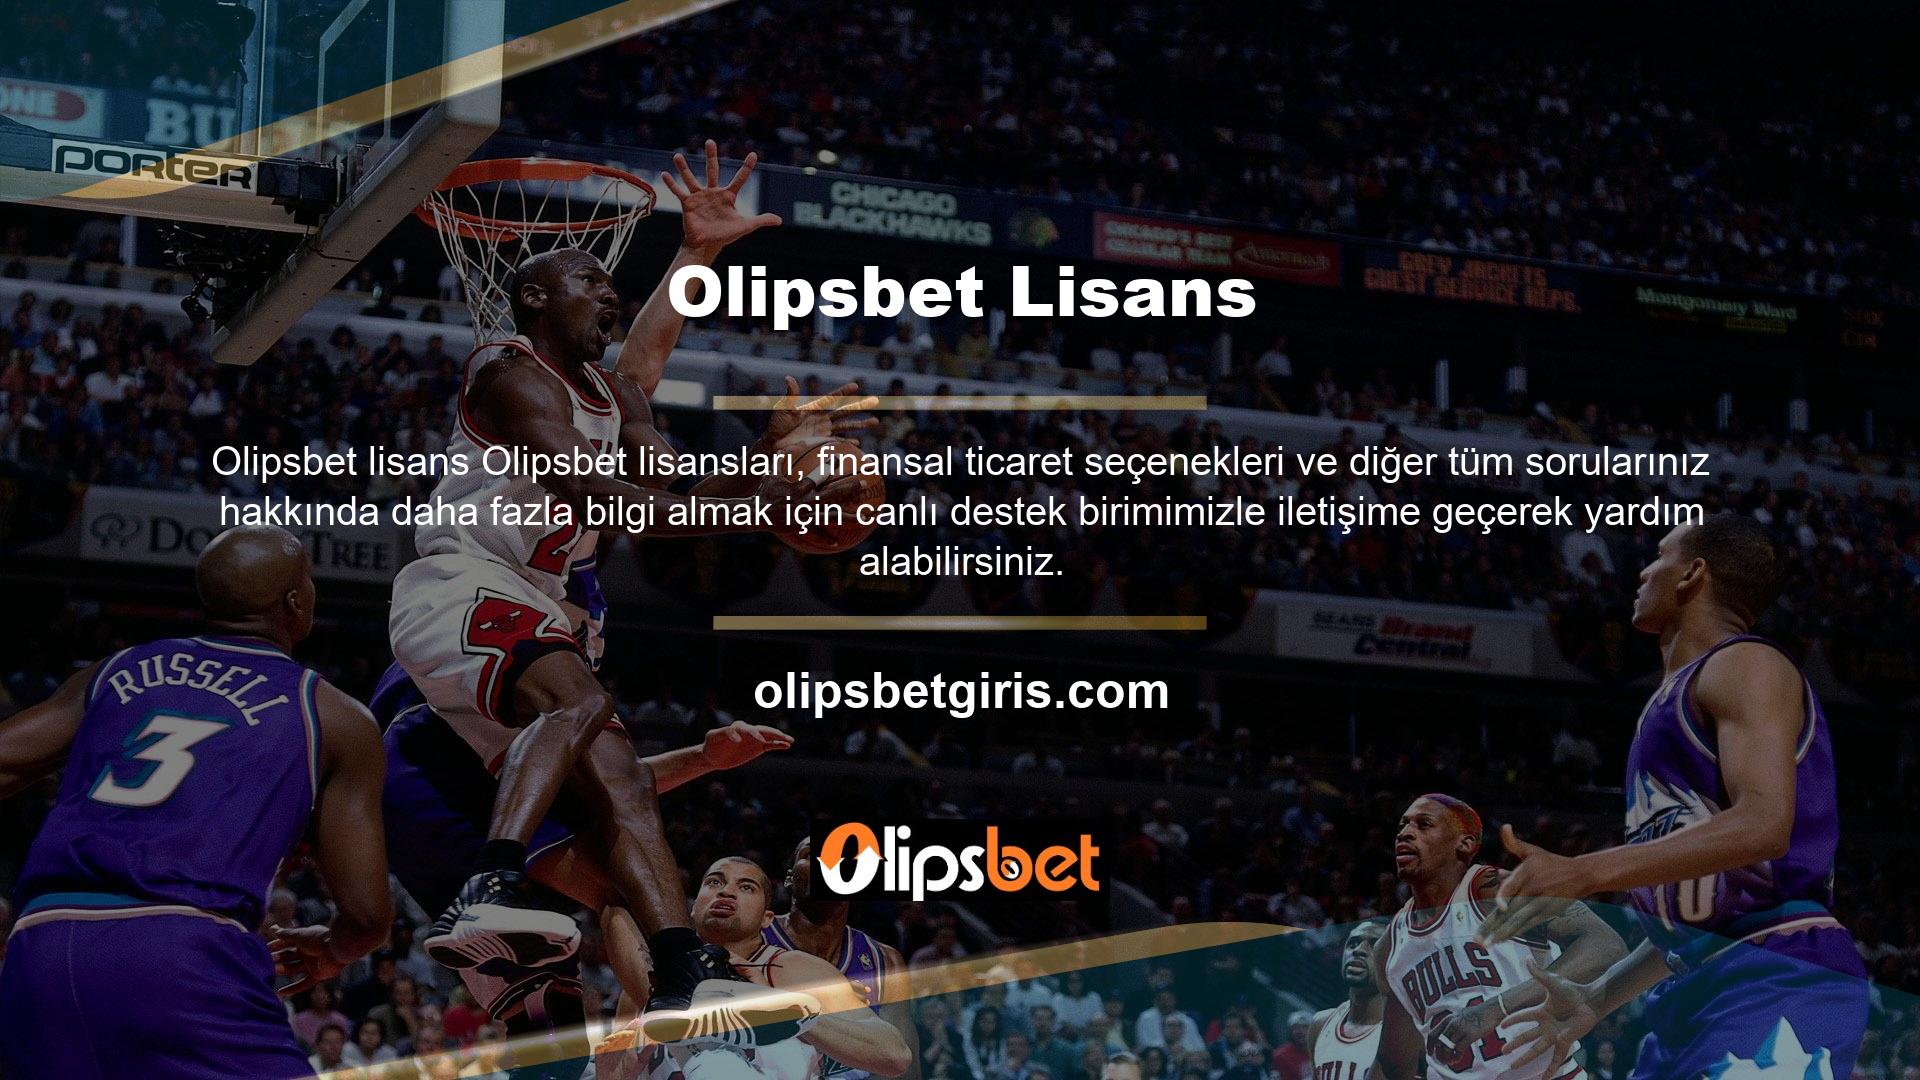 Olipsbet Bonus çevrimiçi casino web sitesi, yeni oyuncuları çekmek ve eski oyuncuları sitede eğlendirmek için çeşitli bonus etkinlikleri düzenlemektedir